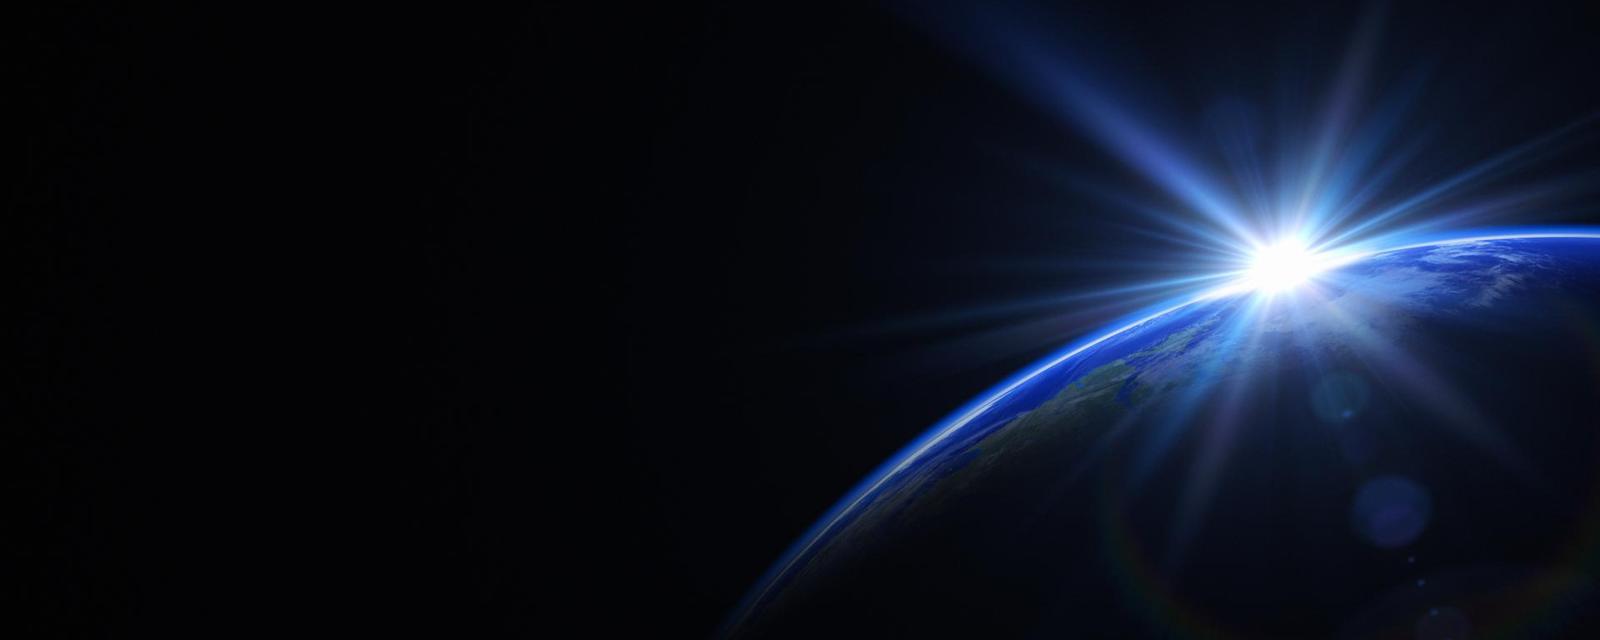 Bermuda triangeln i rymden: ett hot mot astronauter?